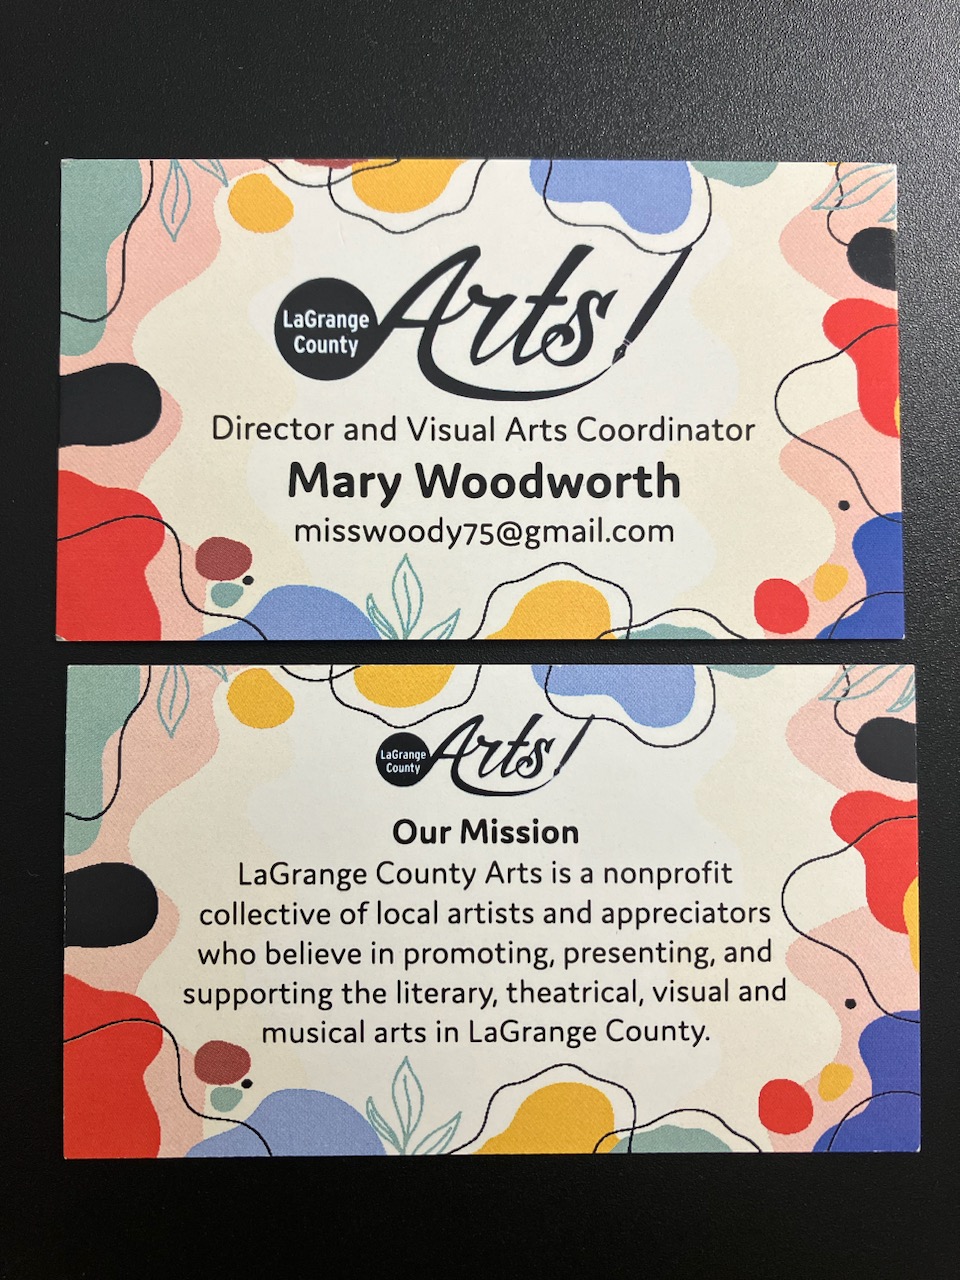 LaGrange County Arts